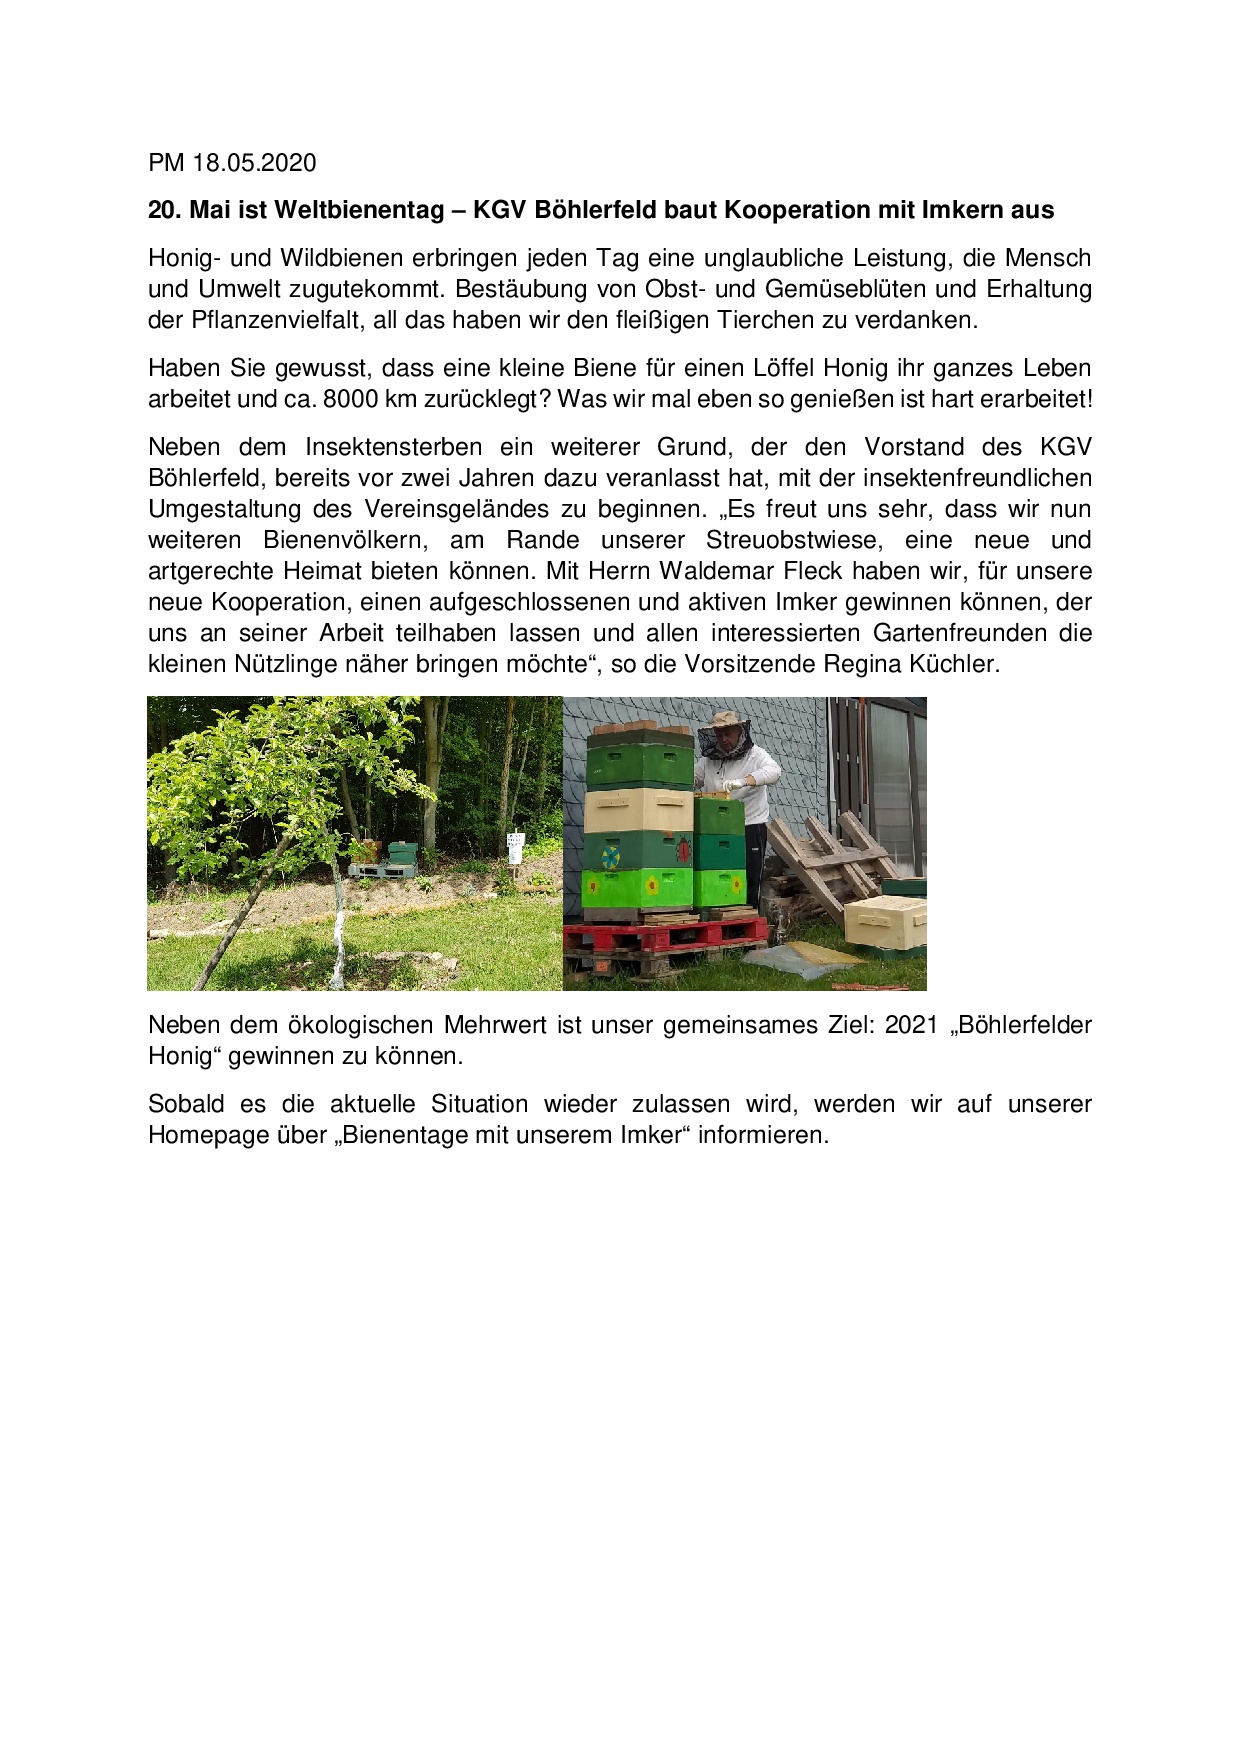 Weltbienentag KGV Boehlerfeld baut Kooperation mit Imkern aus